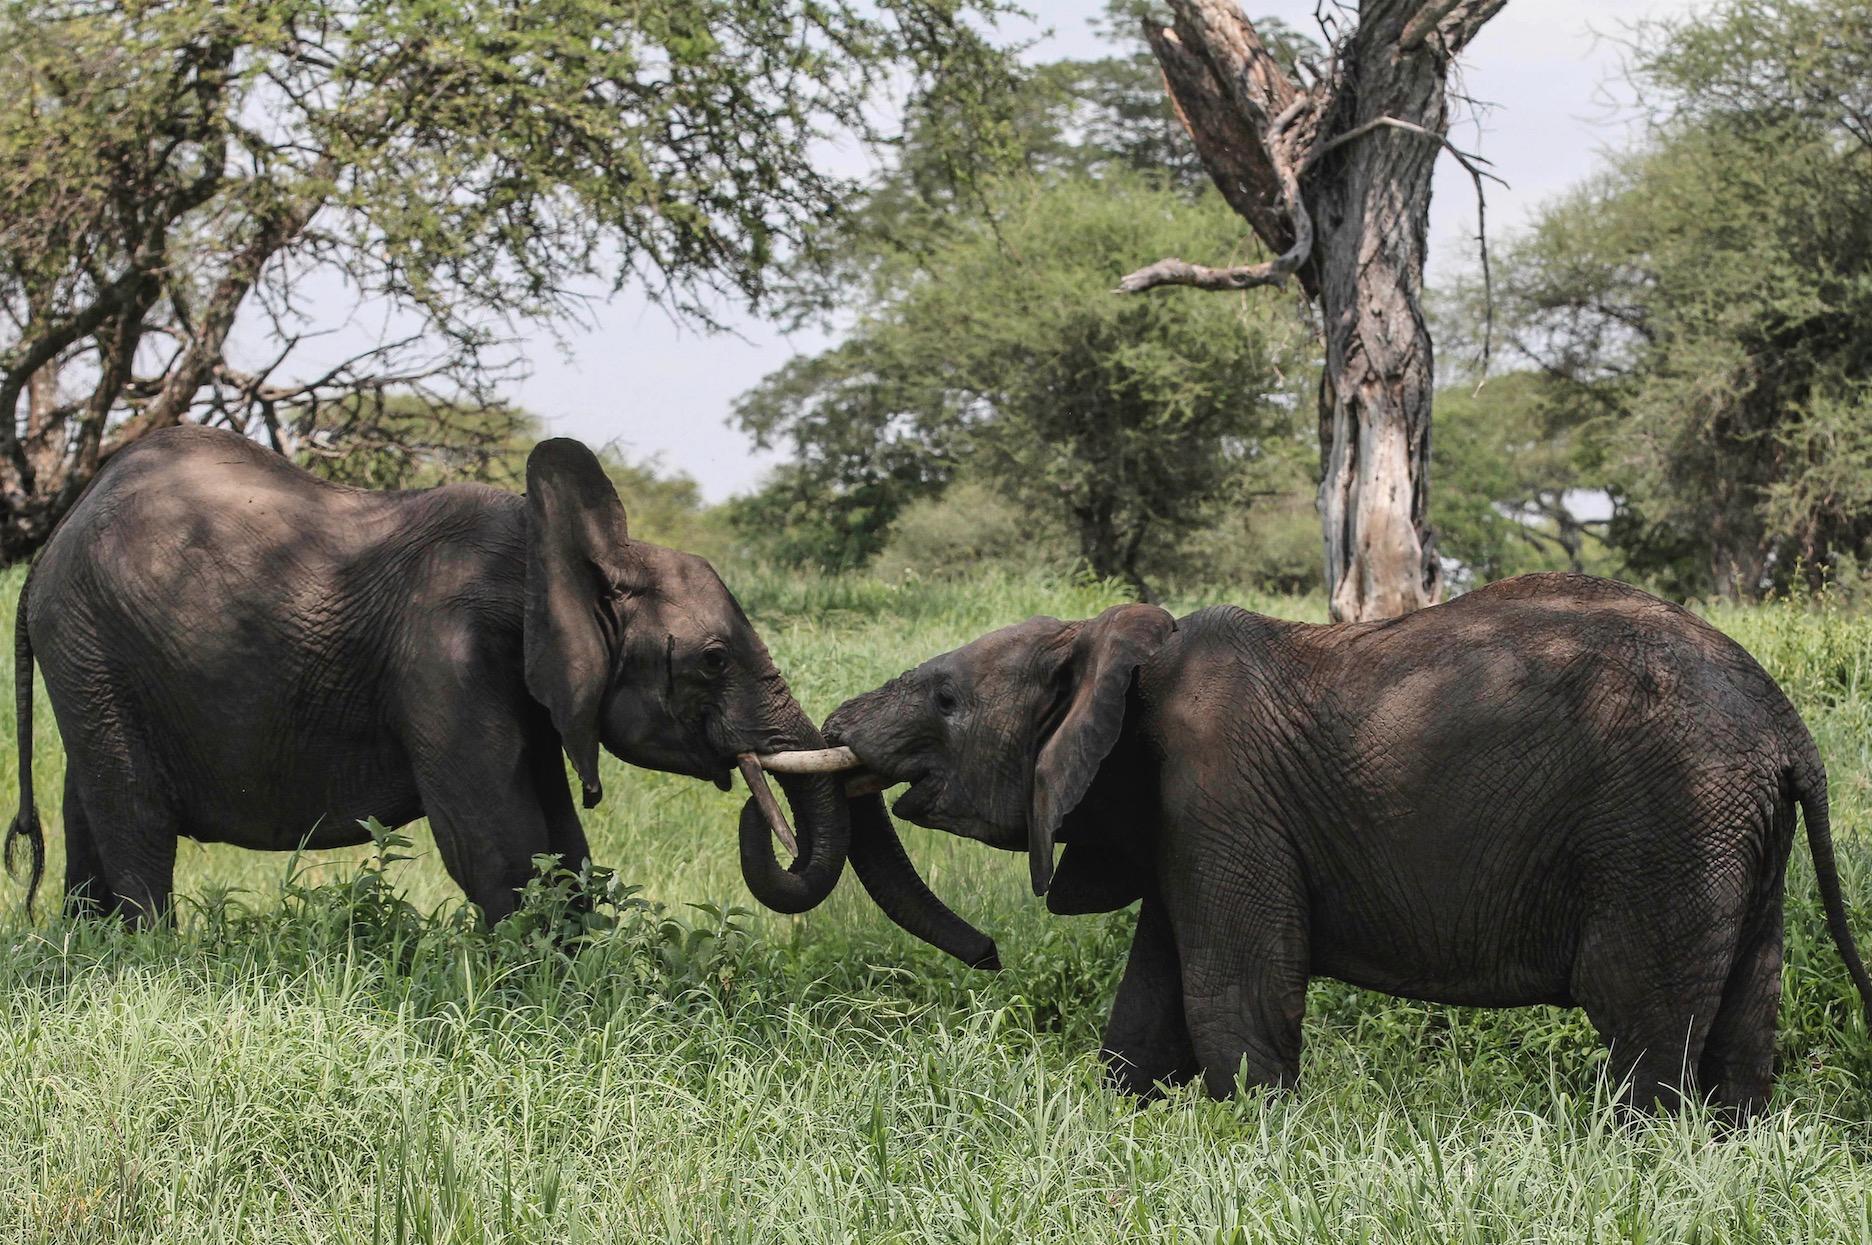 Elefantens betar har varit otroligt åtråvärda på marknaden – men nu införs ett totalförbud mot elfenbenshandel i Kina, och fler länder följer nu efter.